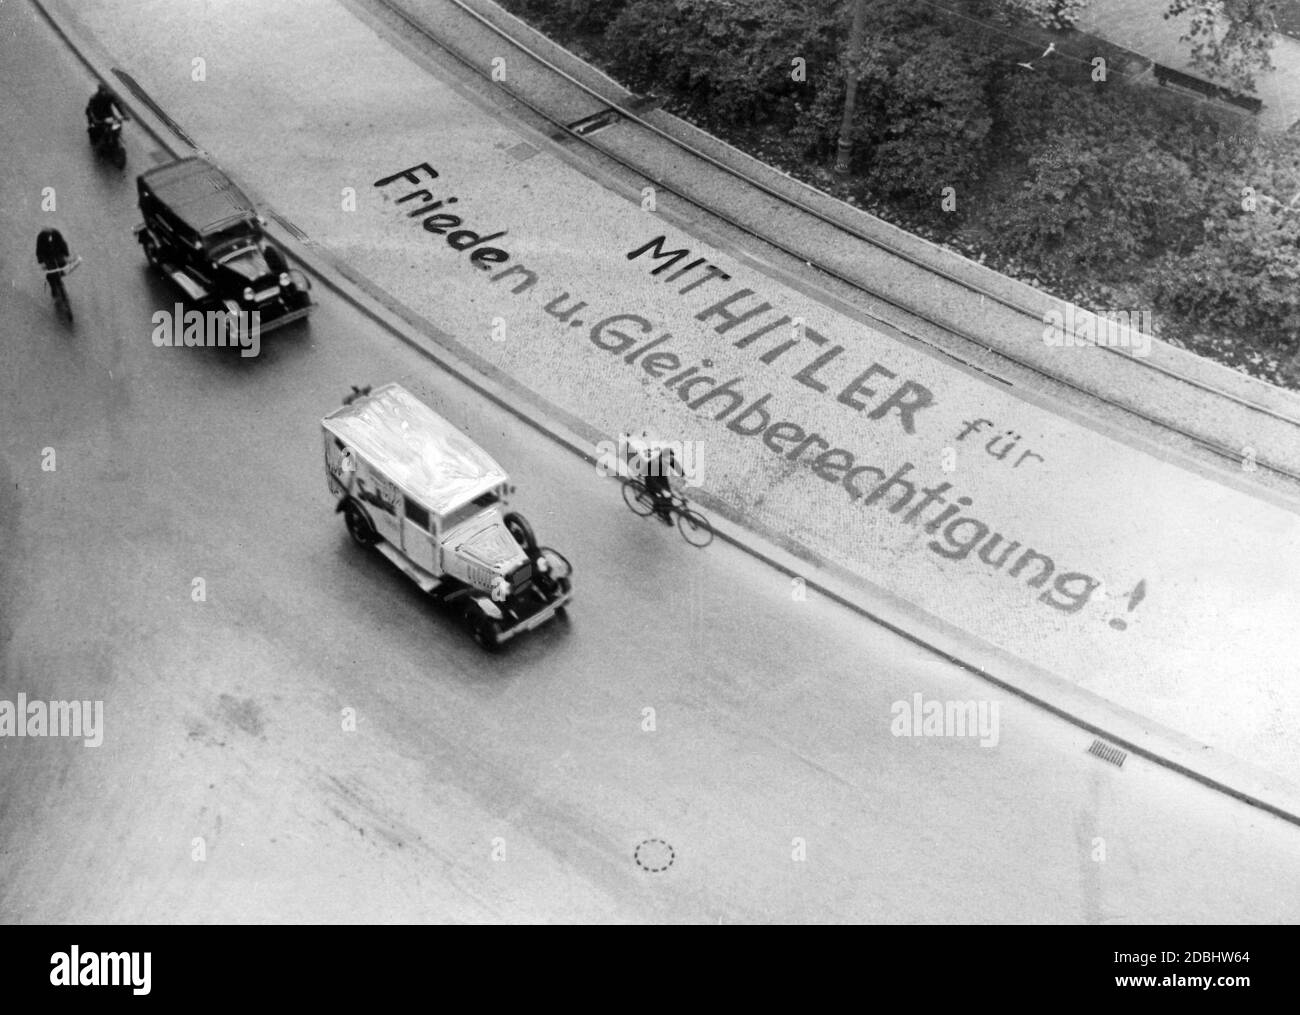 'Die Inschrift 'mit Hitler für Frieden und Gleichberechtigung!'' (Mit Hitler für Frieden und Gleichheit) auf einem Bürgersteig während des Reichstagswahlkampfes und Referendum über den Austritt aus dem Völkerbund am 12.11.1933. (Retuschierte Vorlage)' Stockfoto